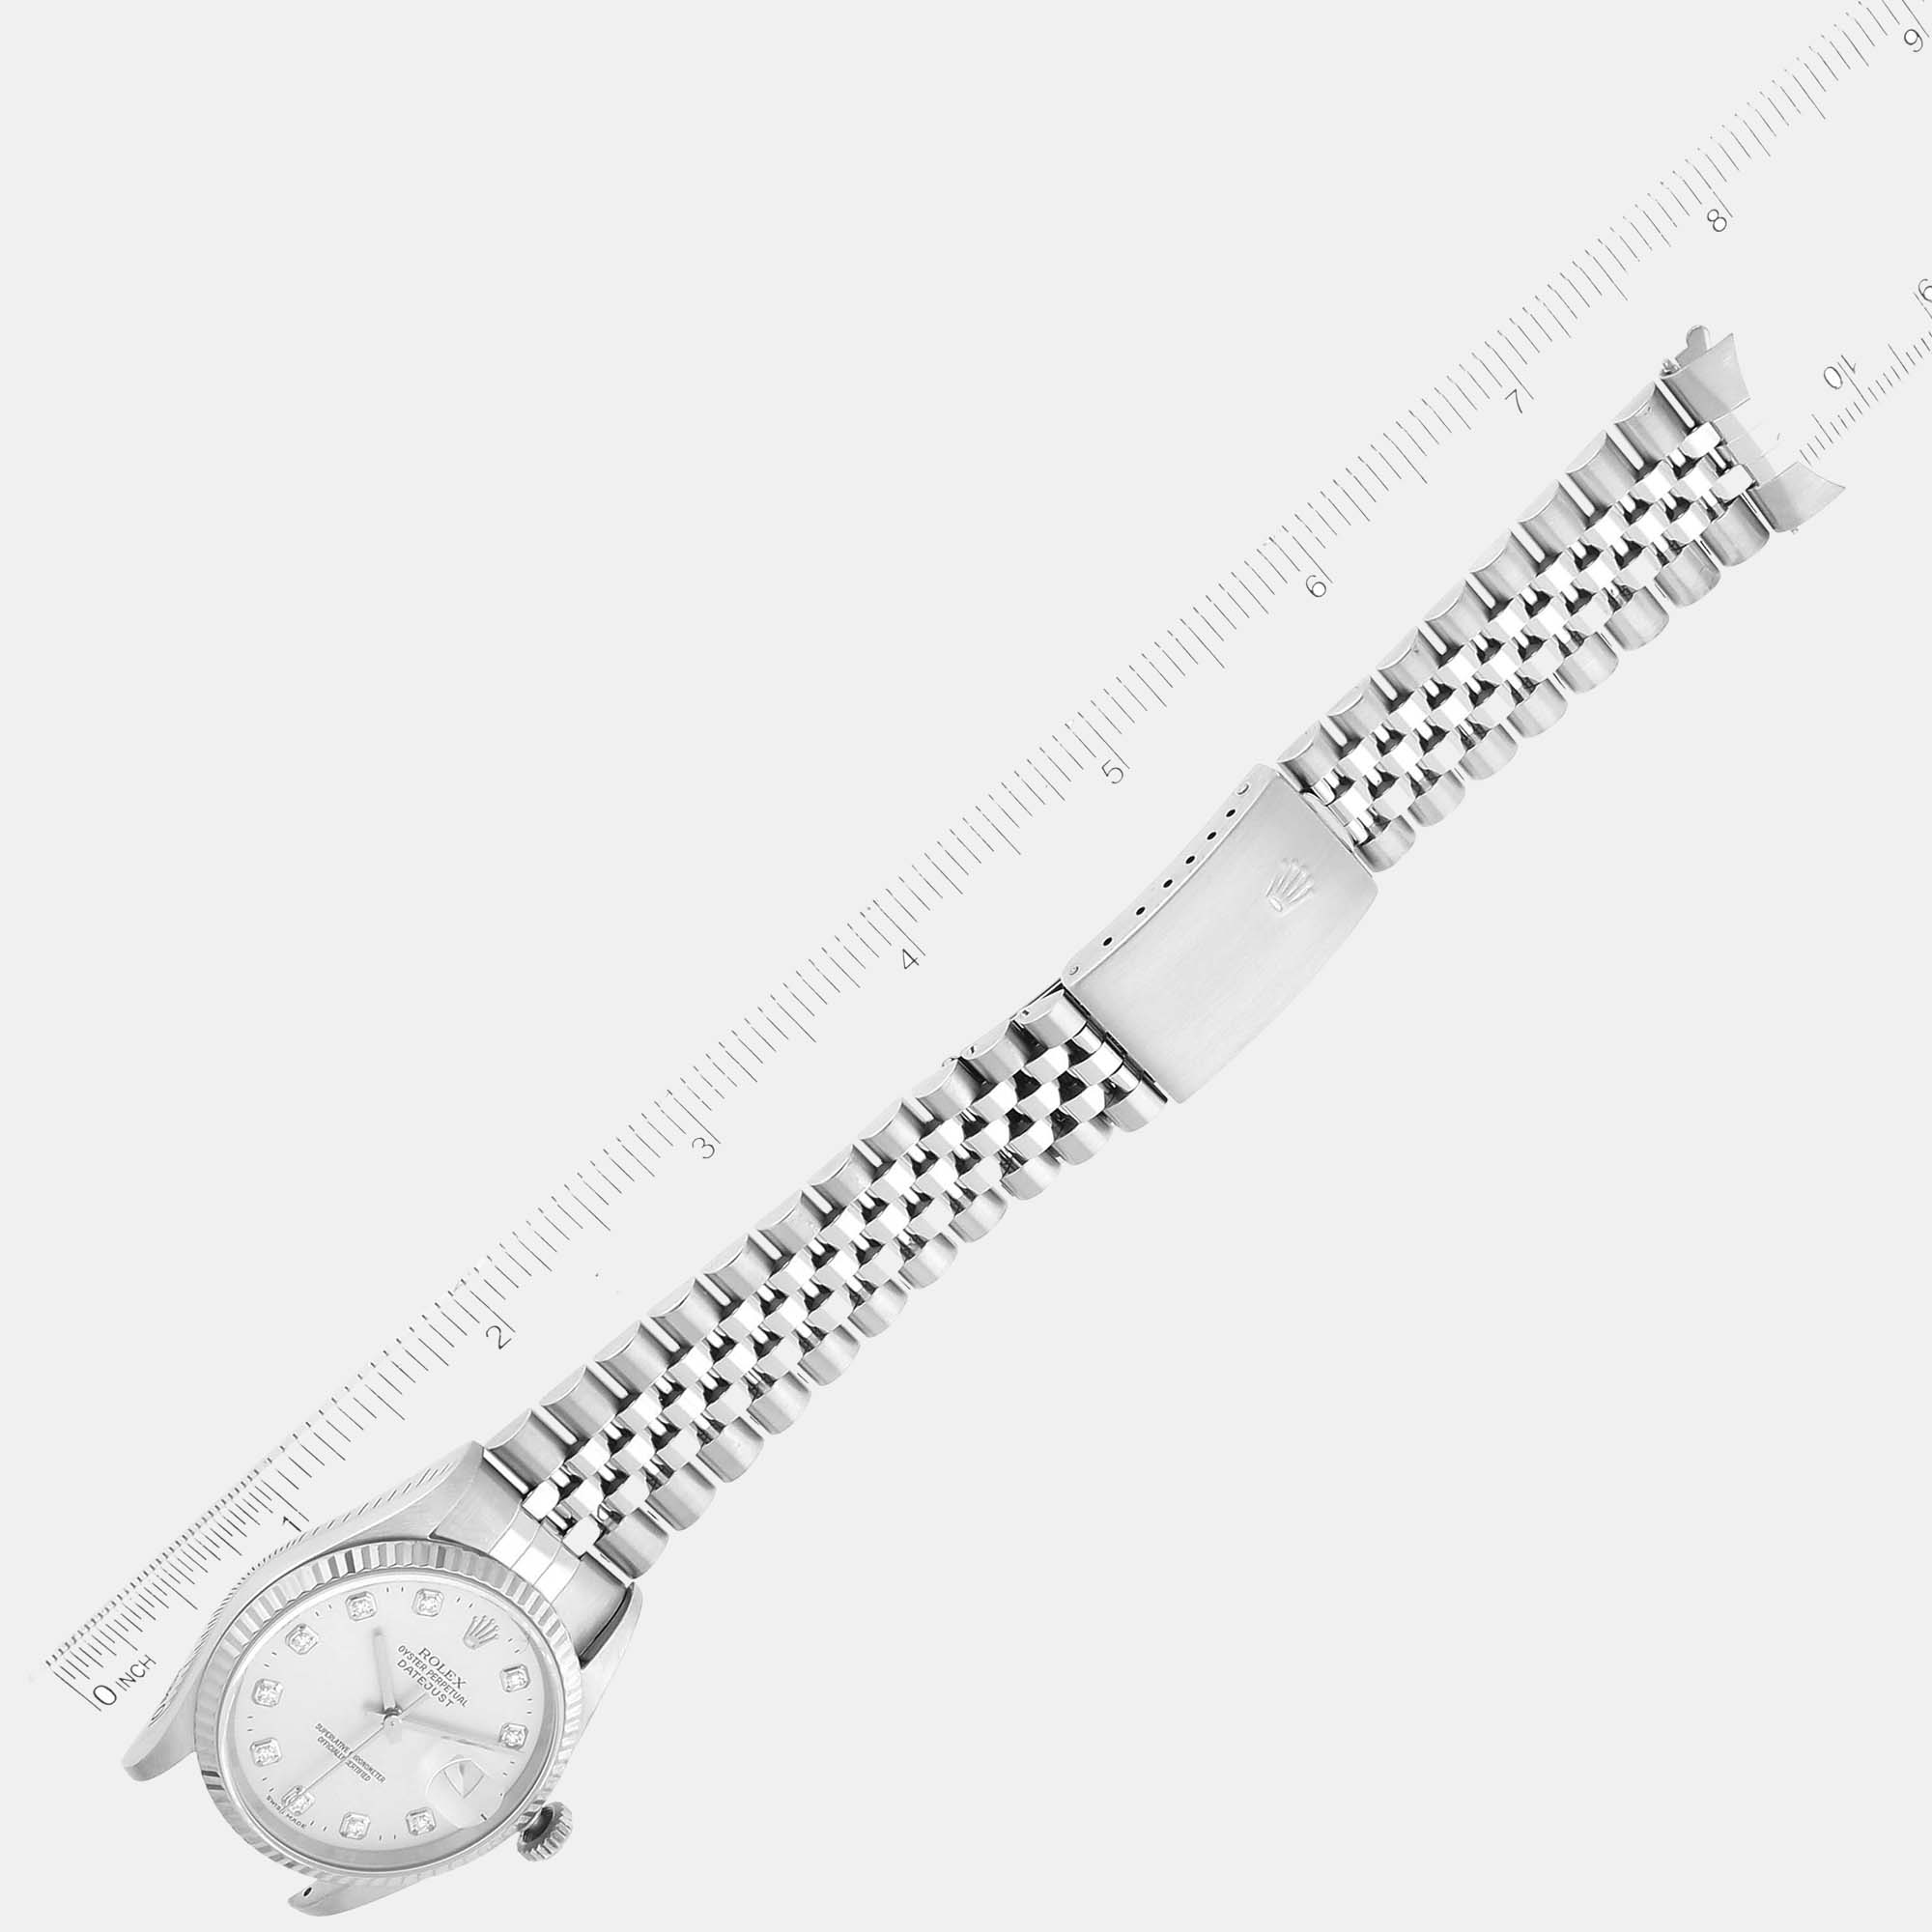 Rolex Datejust Steel White Gold Diamond Dial Men's Watch 16234